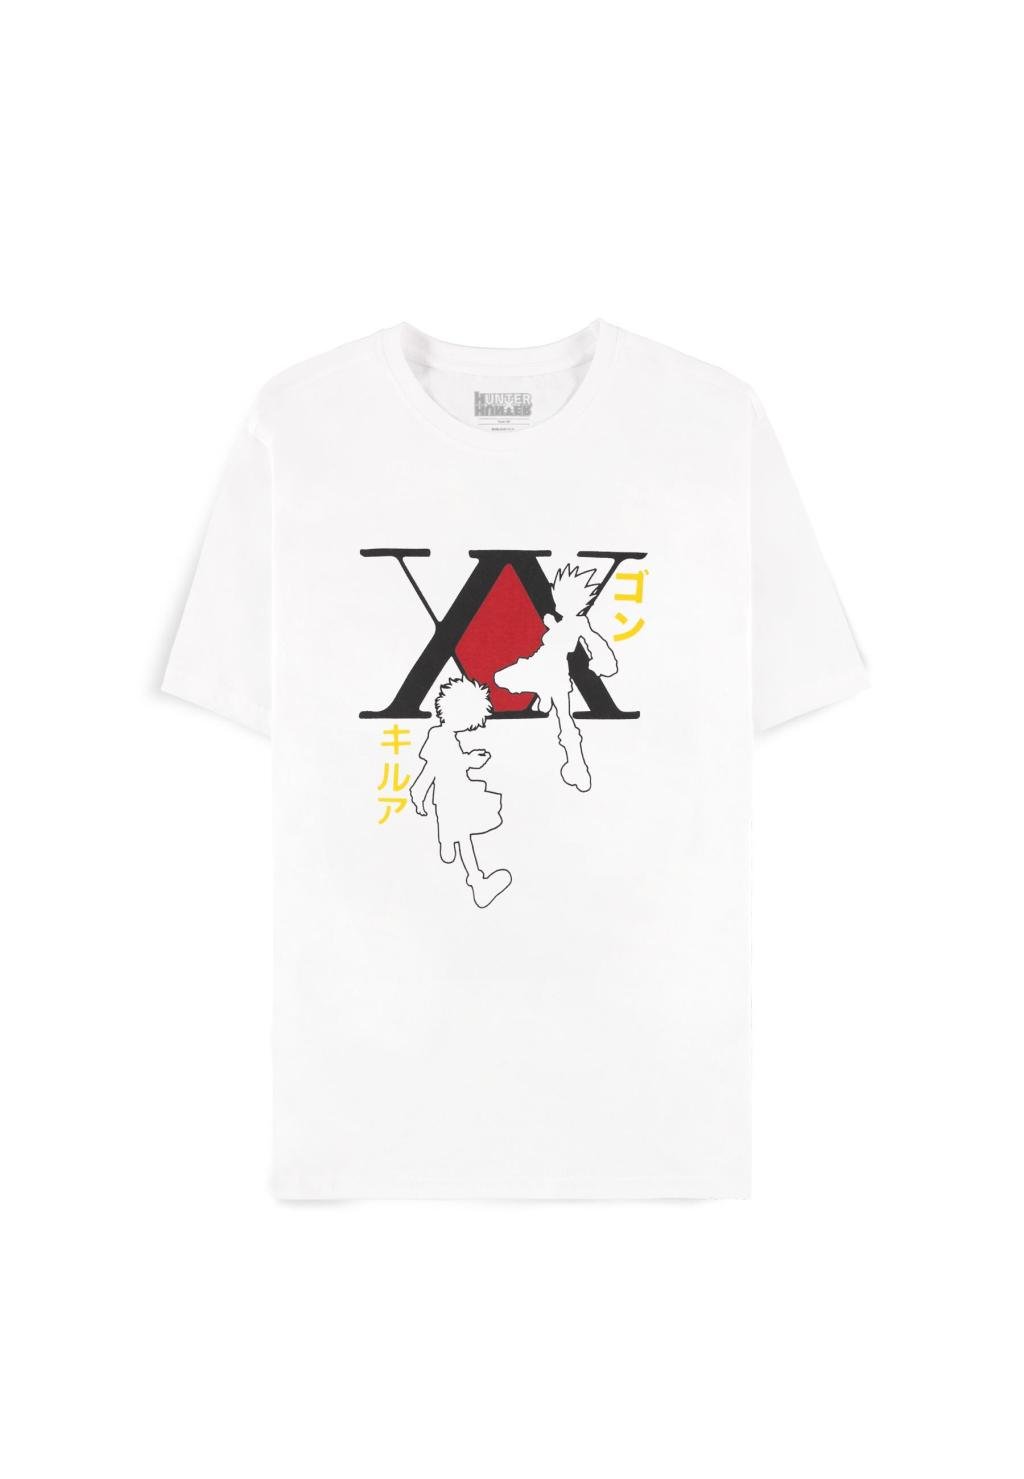 HUNTER X HUNTER - Gon & Kirua - Men's T-shirt (M)